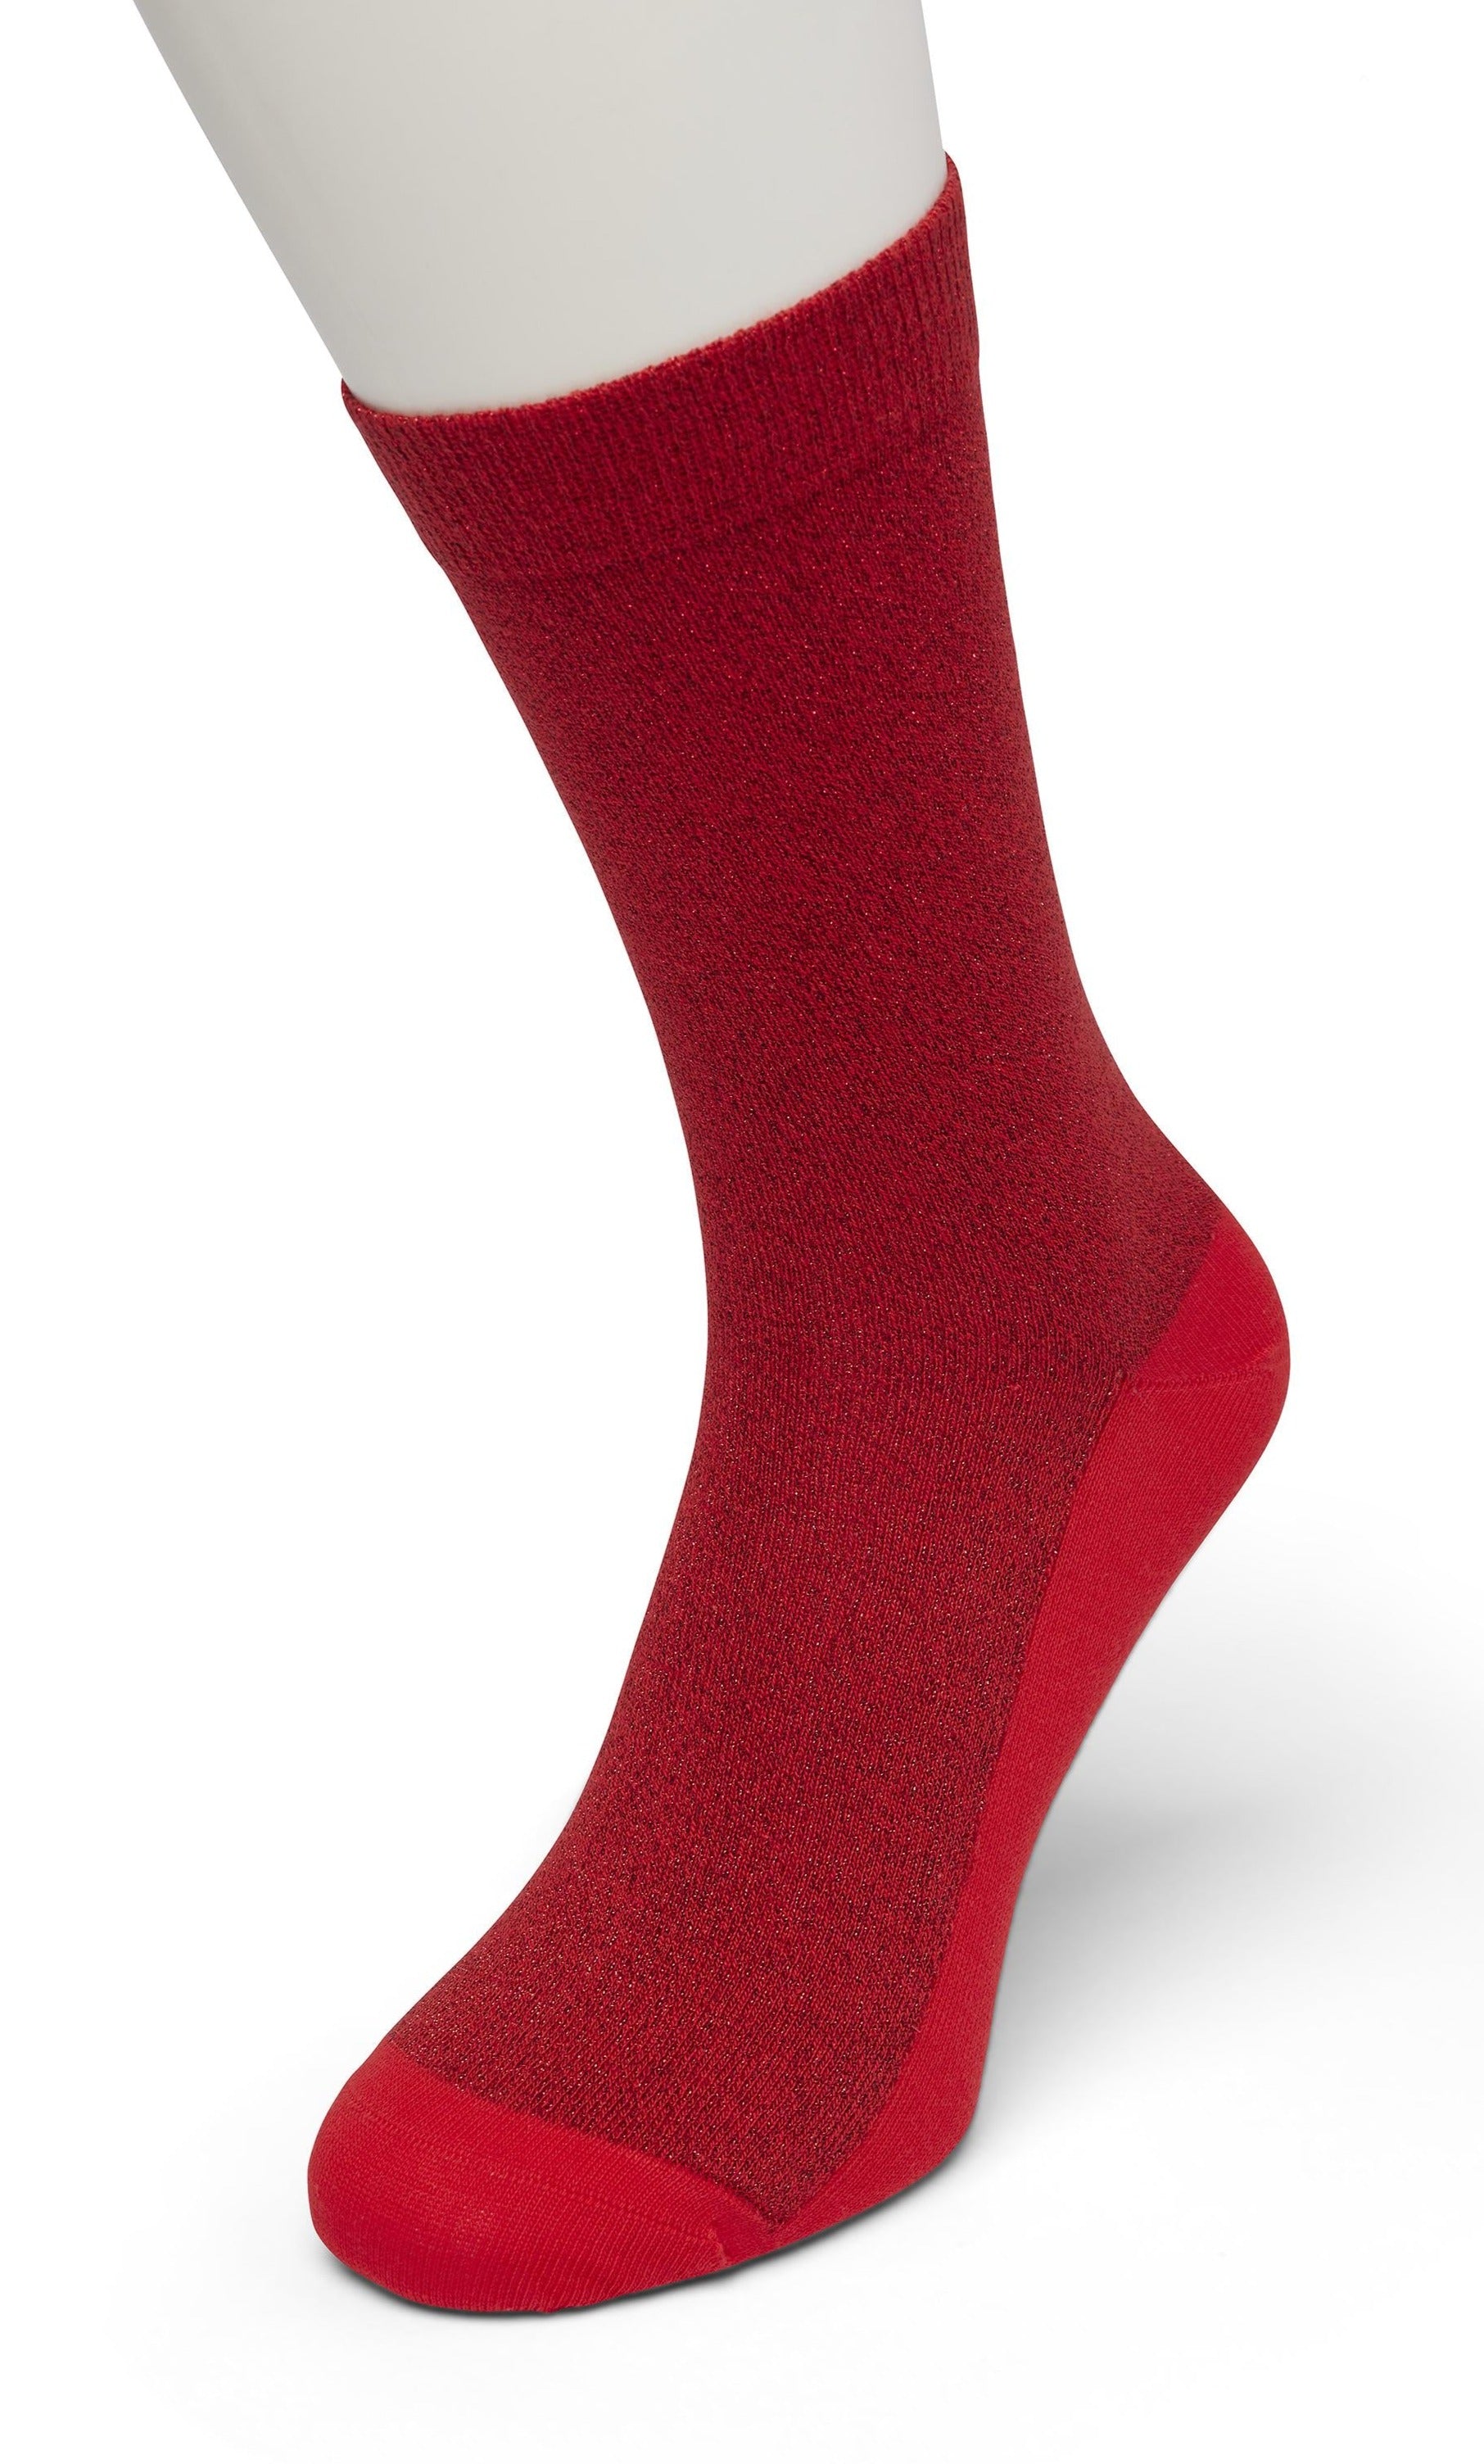 Bonnie Doon BP051138 Cotton Sparkle Socks - Red (Hibiscus) socks with sparkly glitter lam̩ lurex